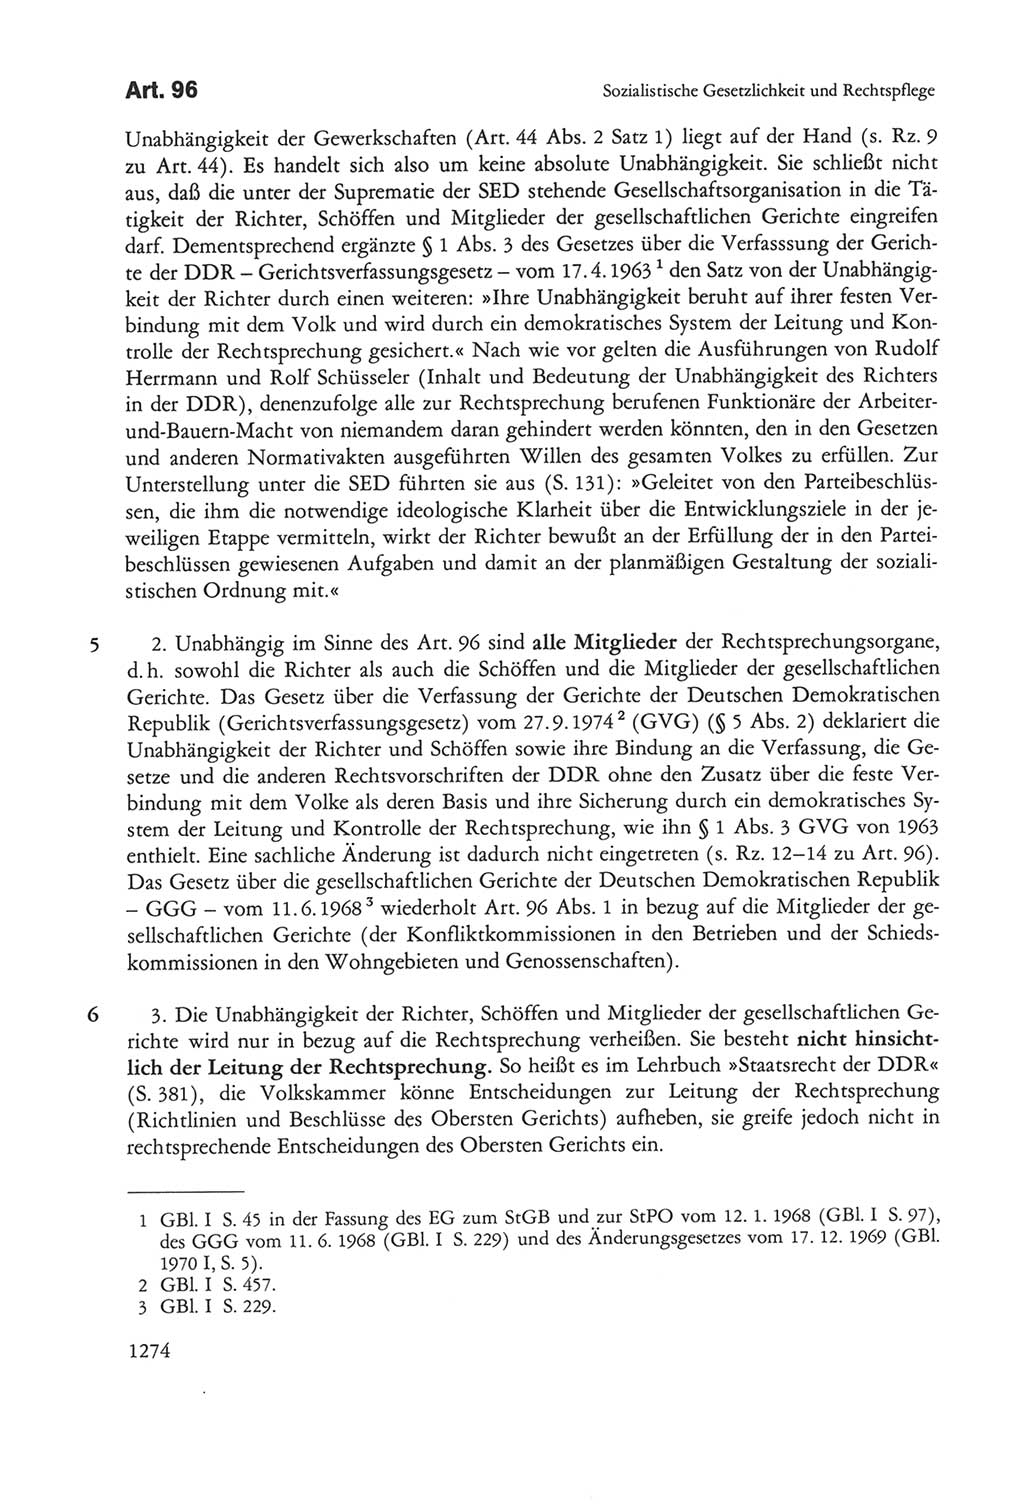 Die sozialistische Verfassung der Deutschen Demokratischen Republik (DDR), Kommentar 1982, Seite 1274 (Soz. Verf. DDR Komm. 1982, S. 1274)